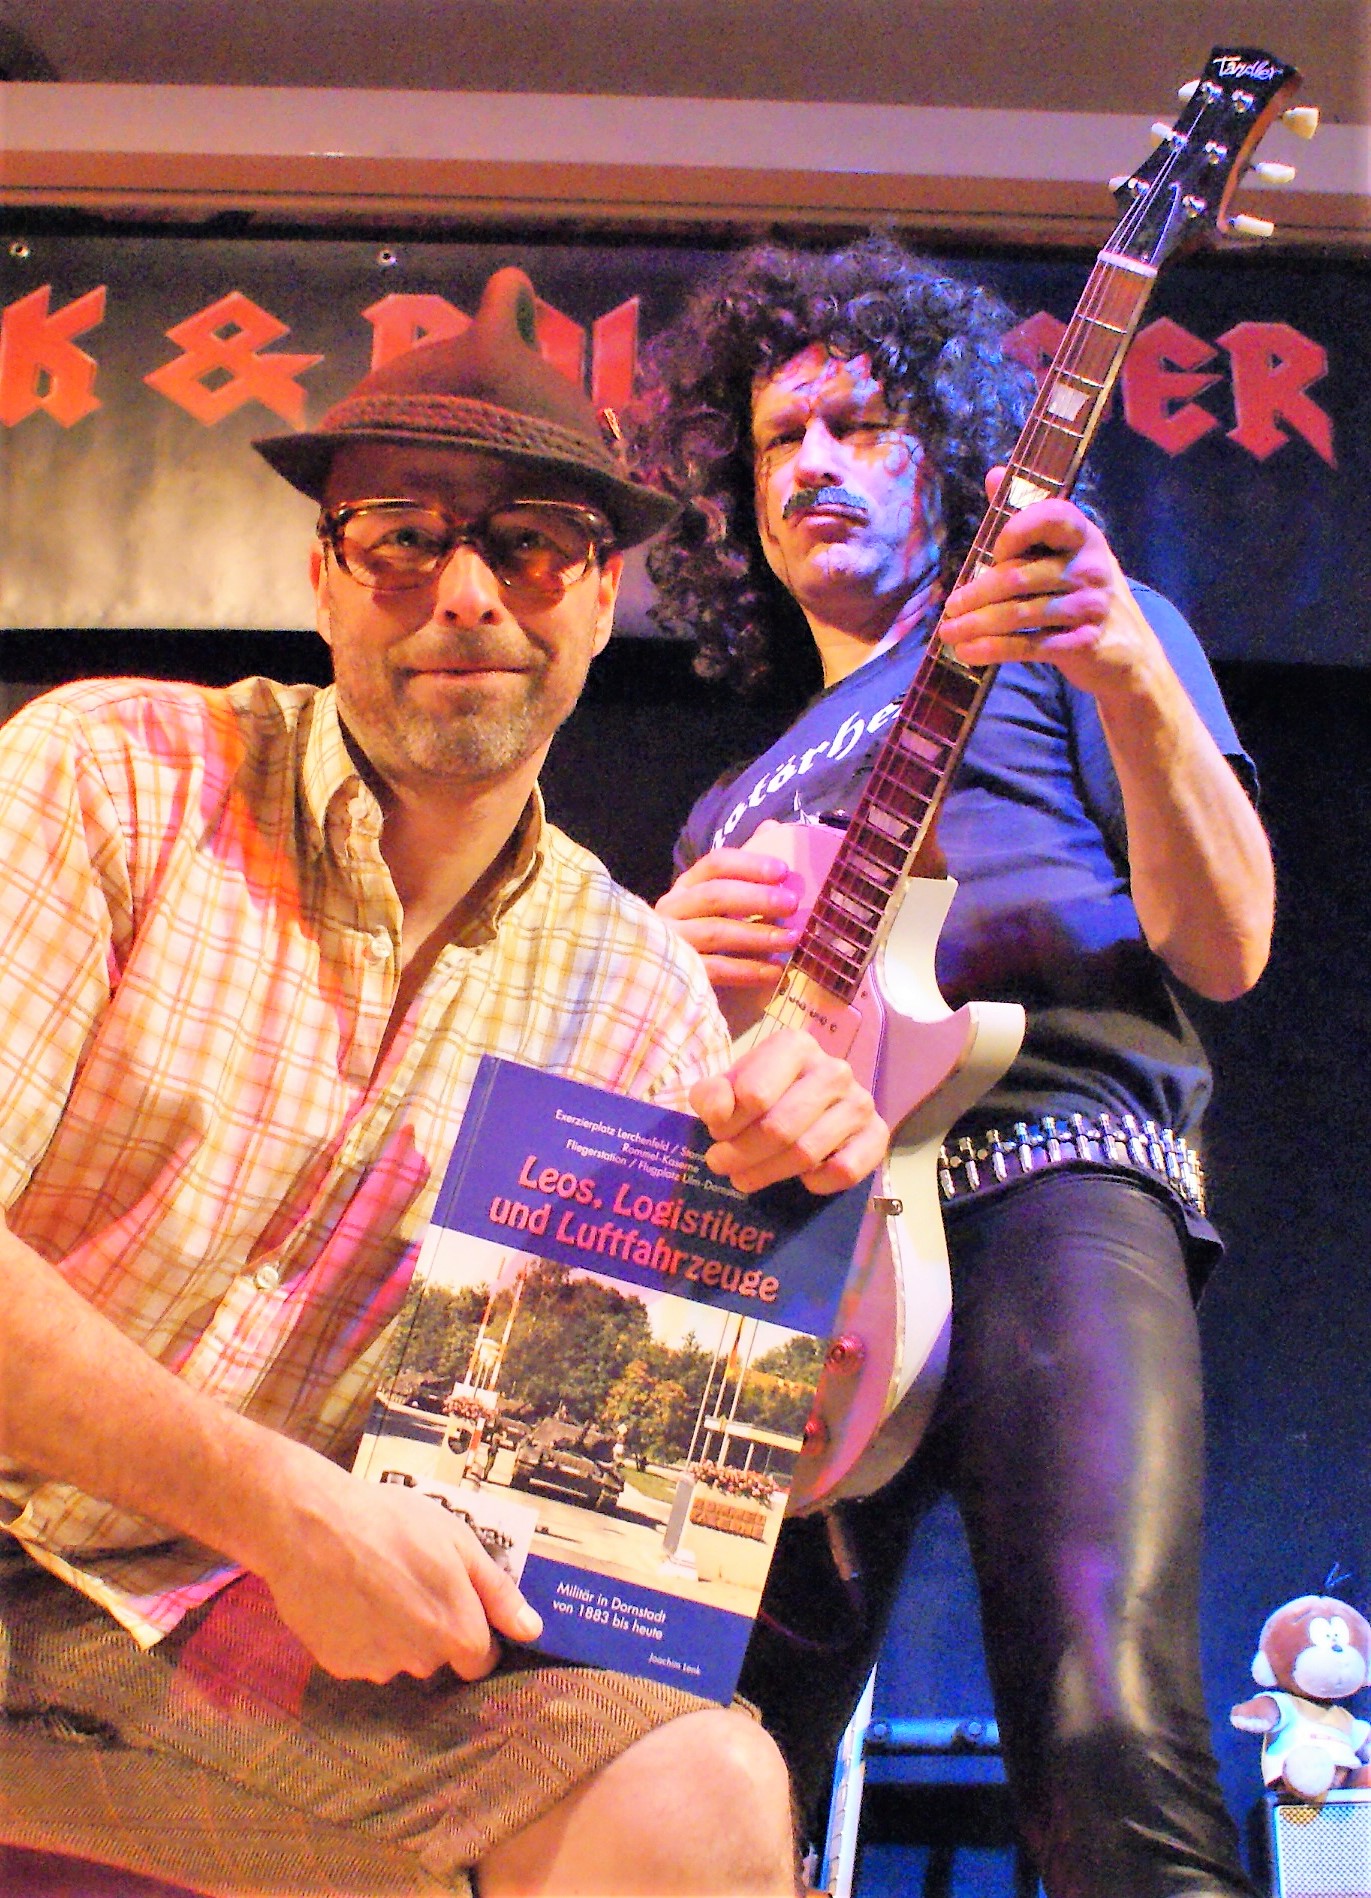 Rock und Rollinger, schwäbisches Musikkabarett-Duo mit dem Buch